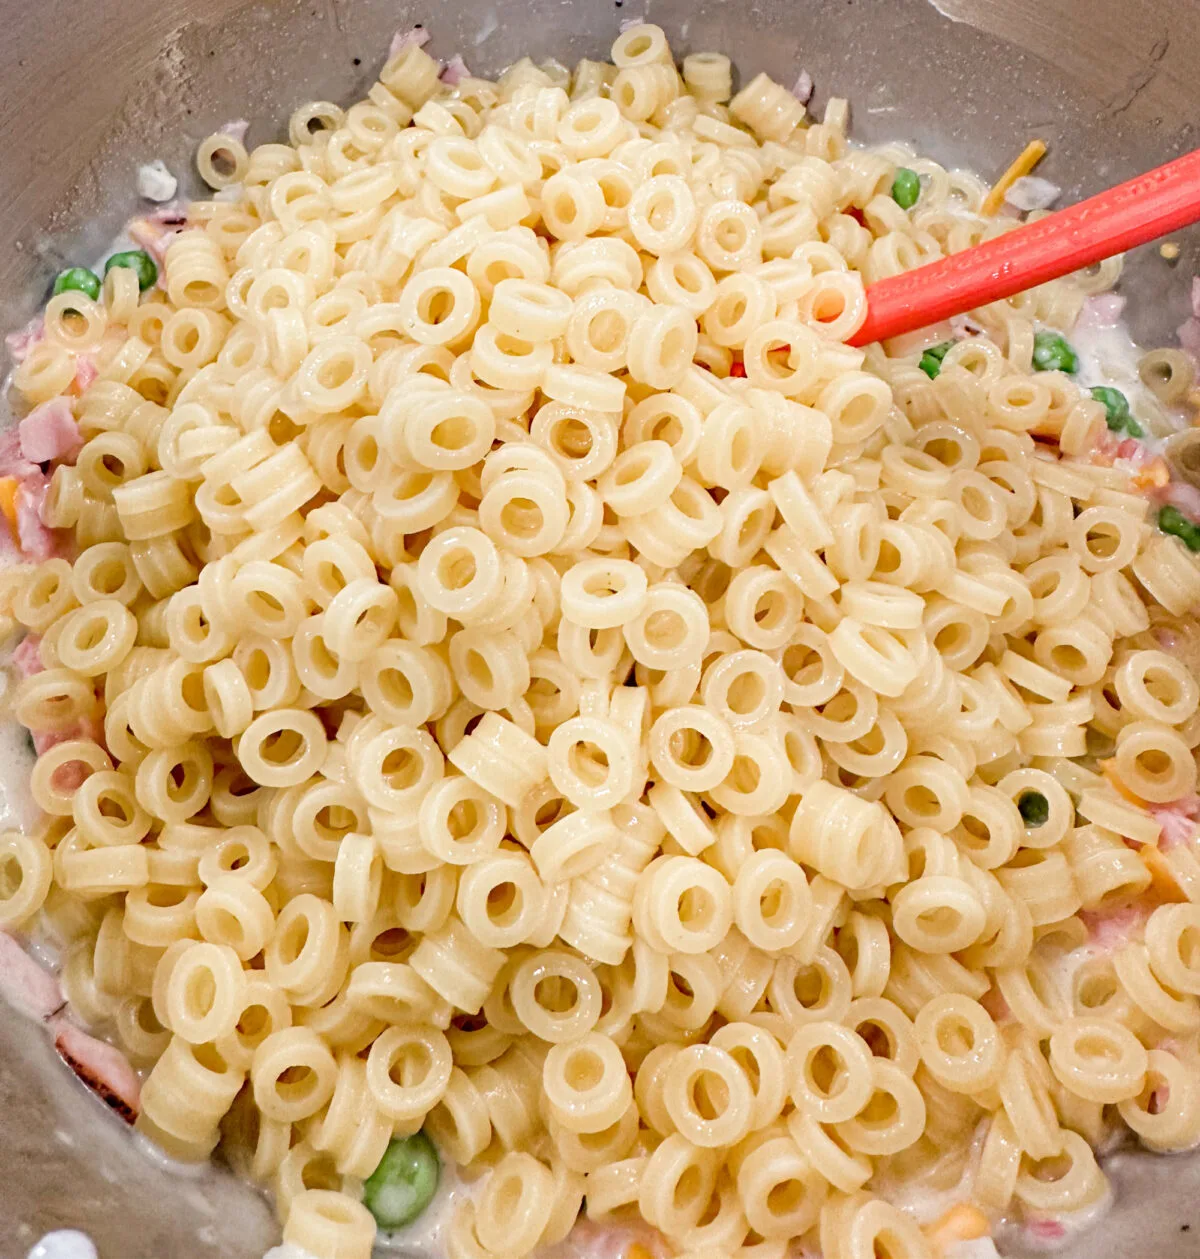 Classic Macaroni Rings Pasta Salad Recipe